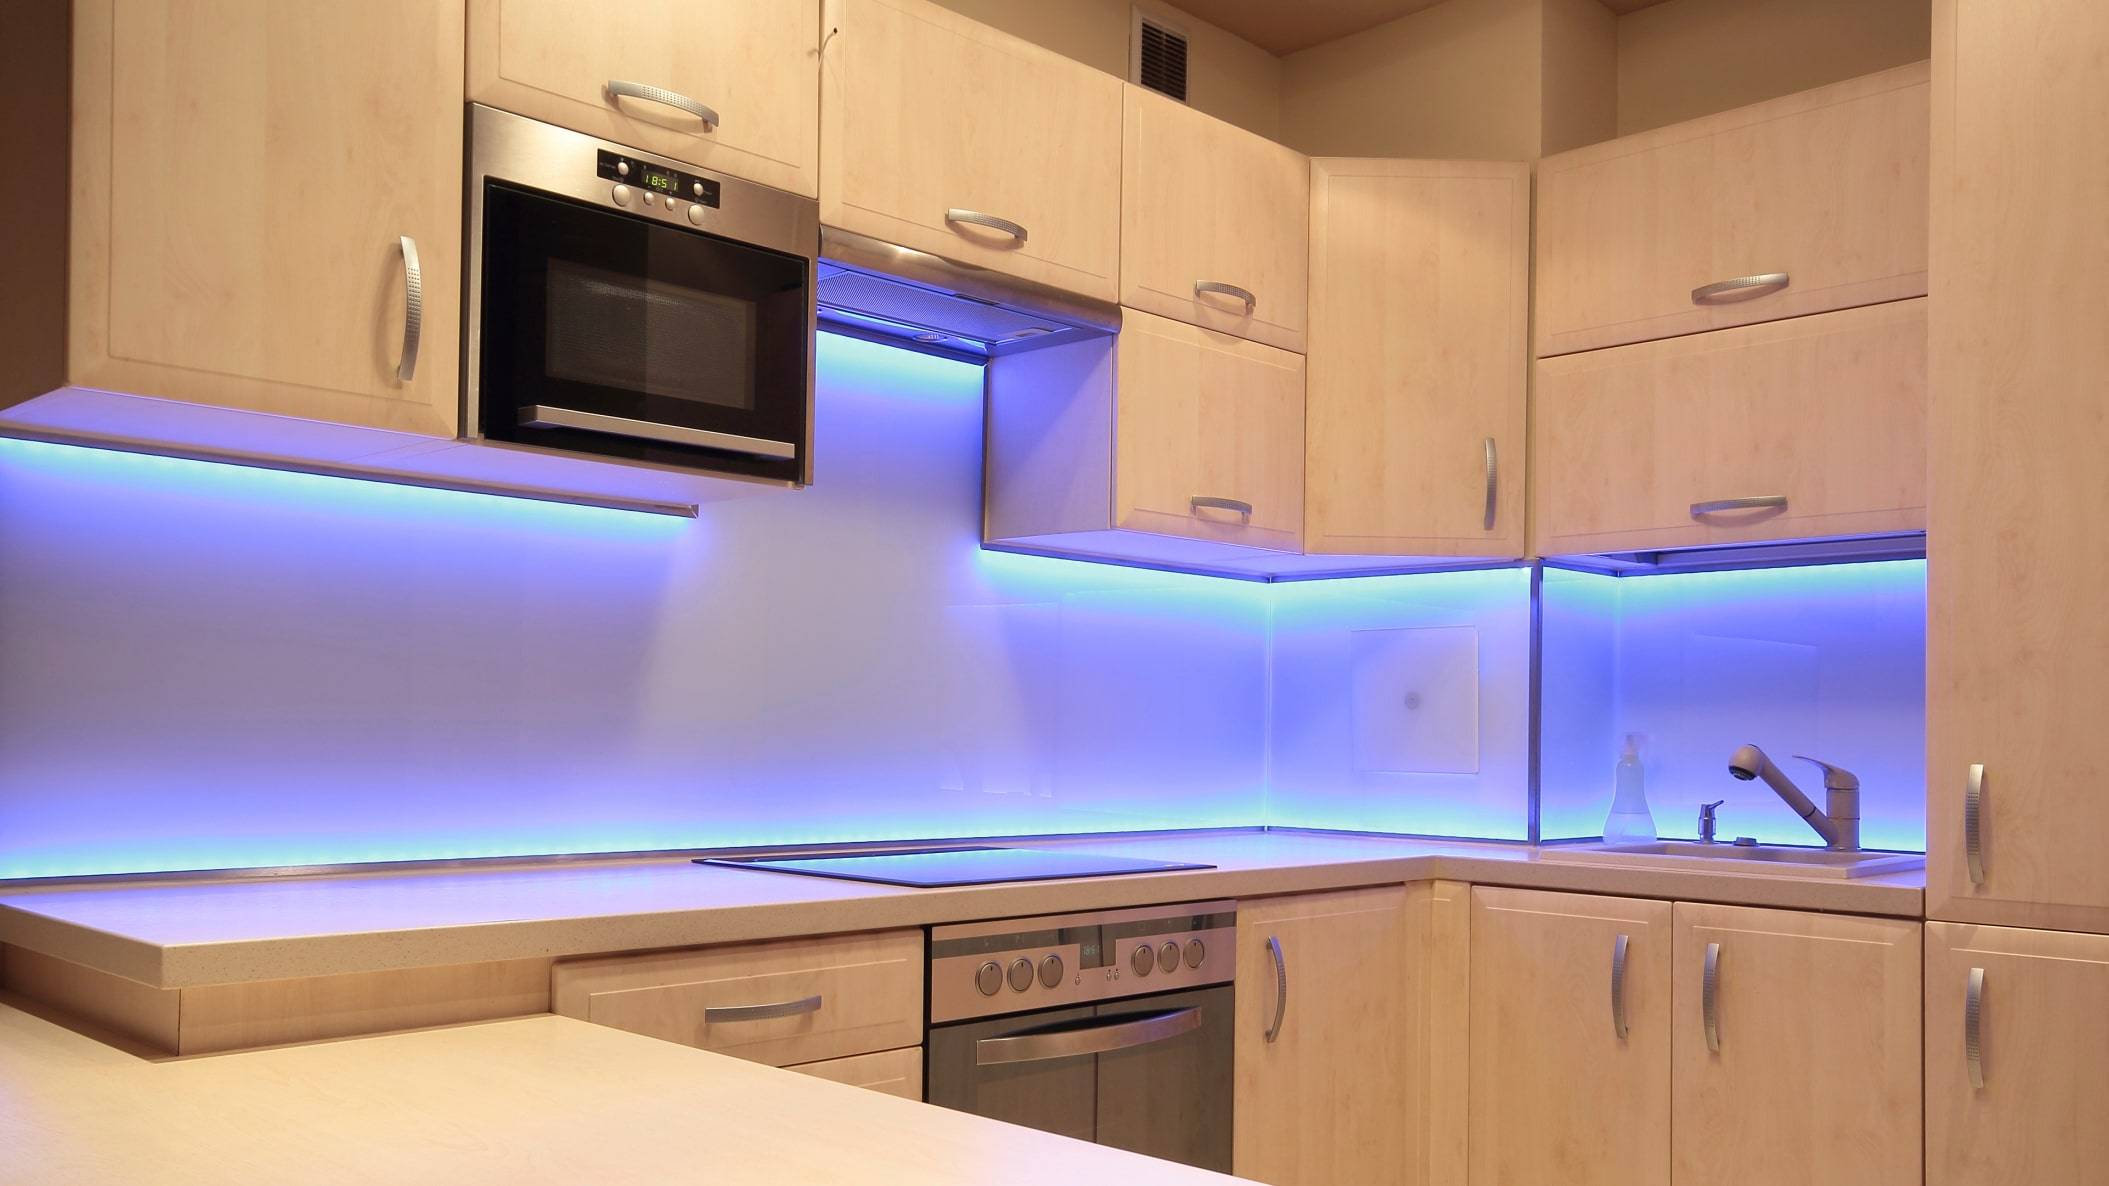 Как сделать подсветку на кухне под шкафчиками без проводов: варианты подсветки